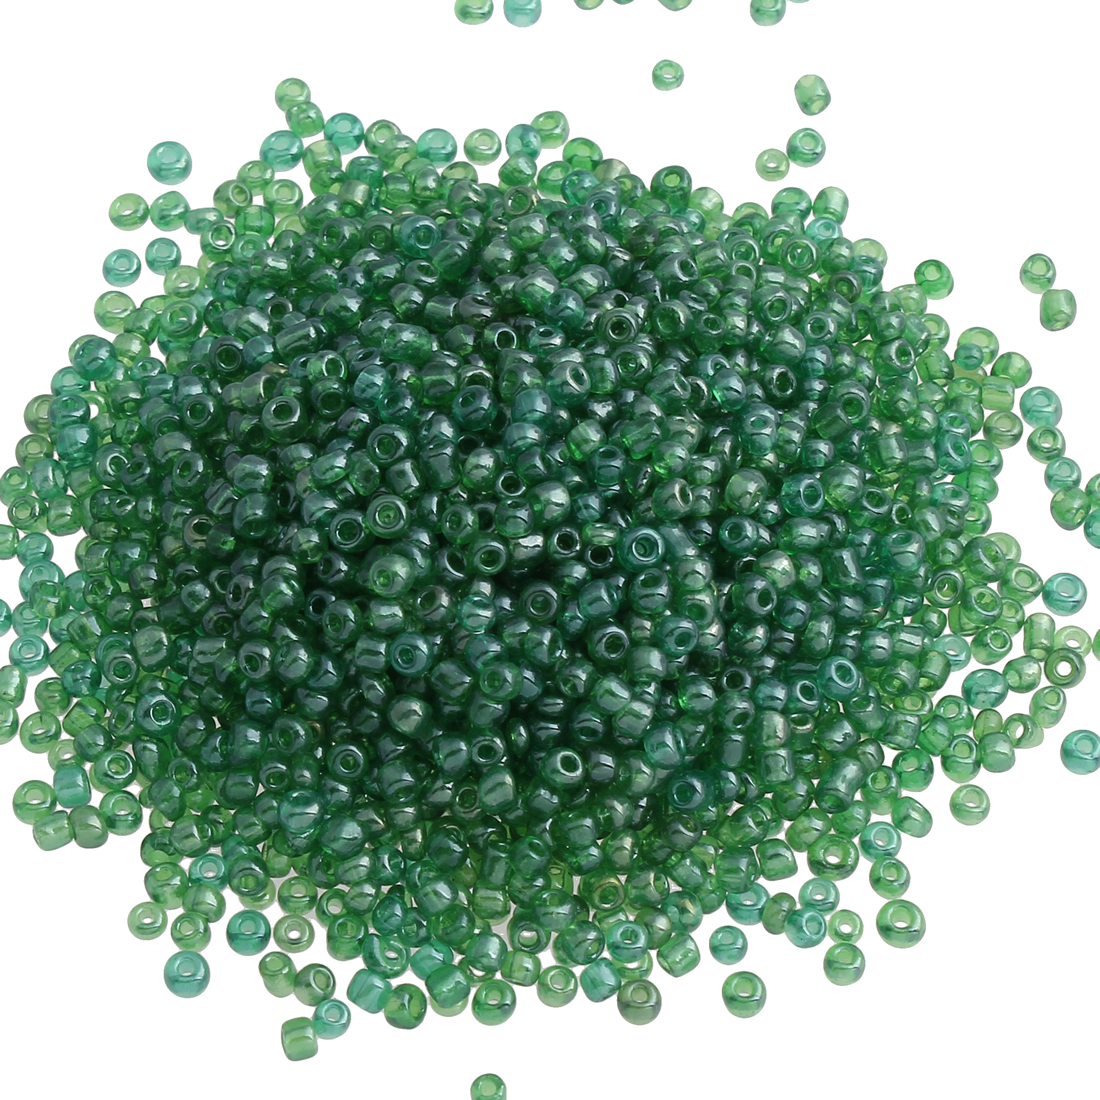 8:pea green